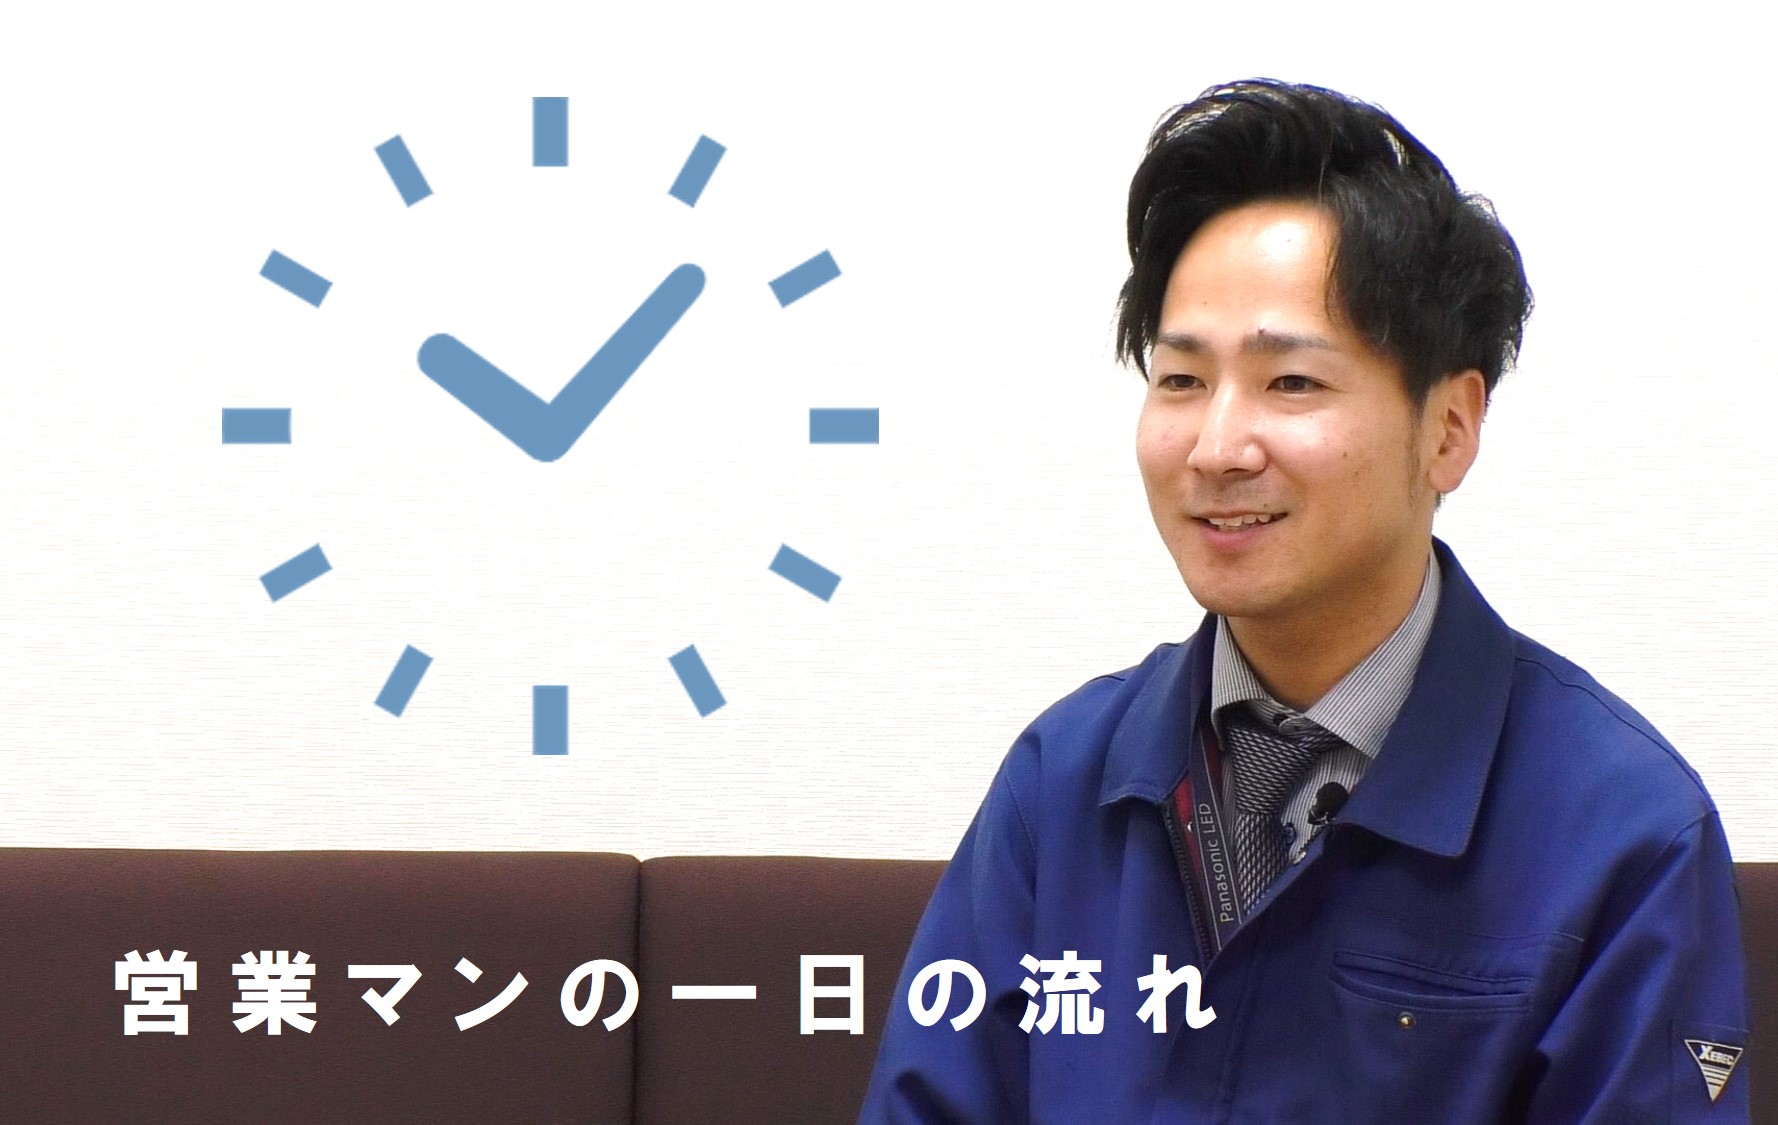 熊本の電設資材総合商社、木村電機で働く社員の一日の仕事の流れを解説